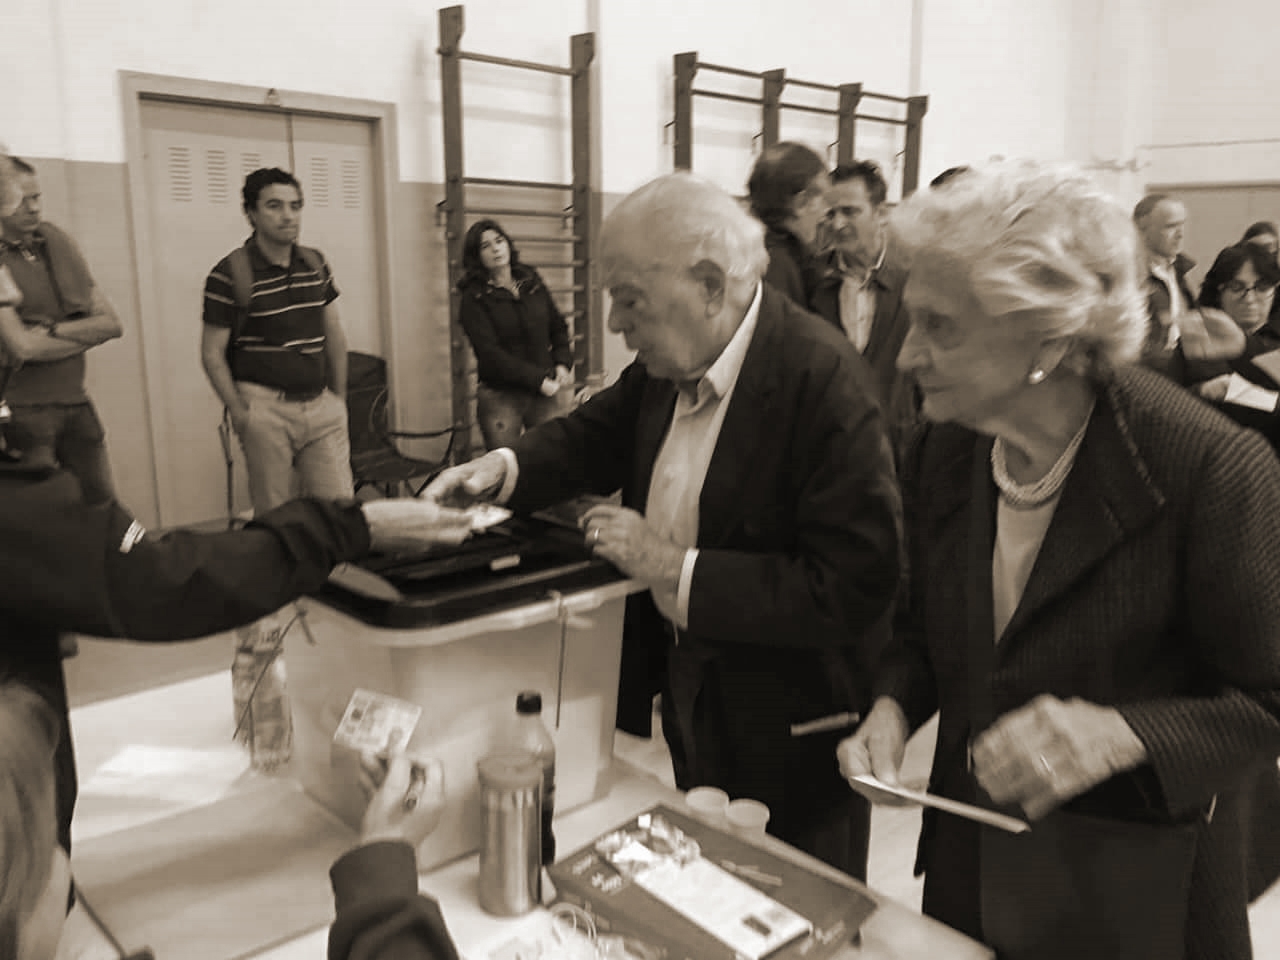 Jordi Pujol y Marta Ferrusola votan en el referéndum del 1-O.